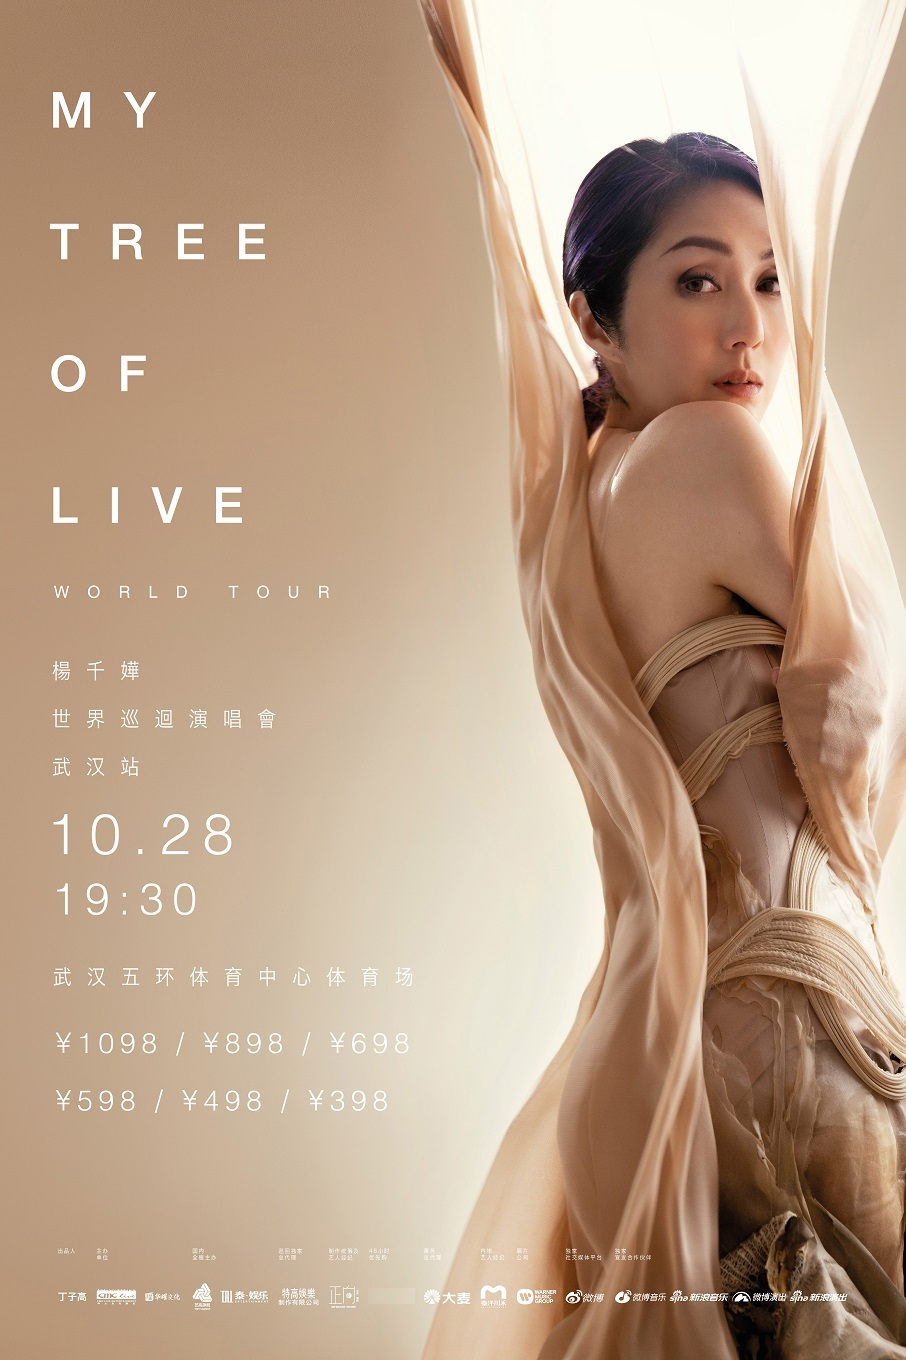 [武汉]杨千嬅MY TREE OF LIVE世界巡回演唱会-武汉站